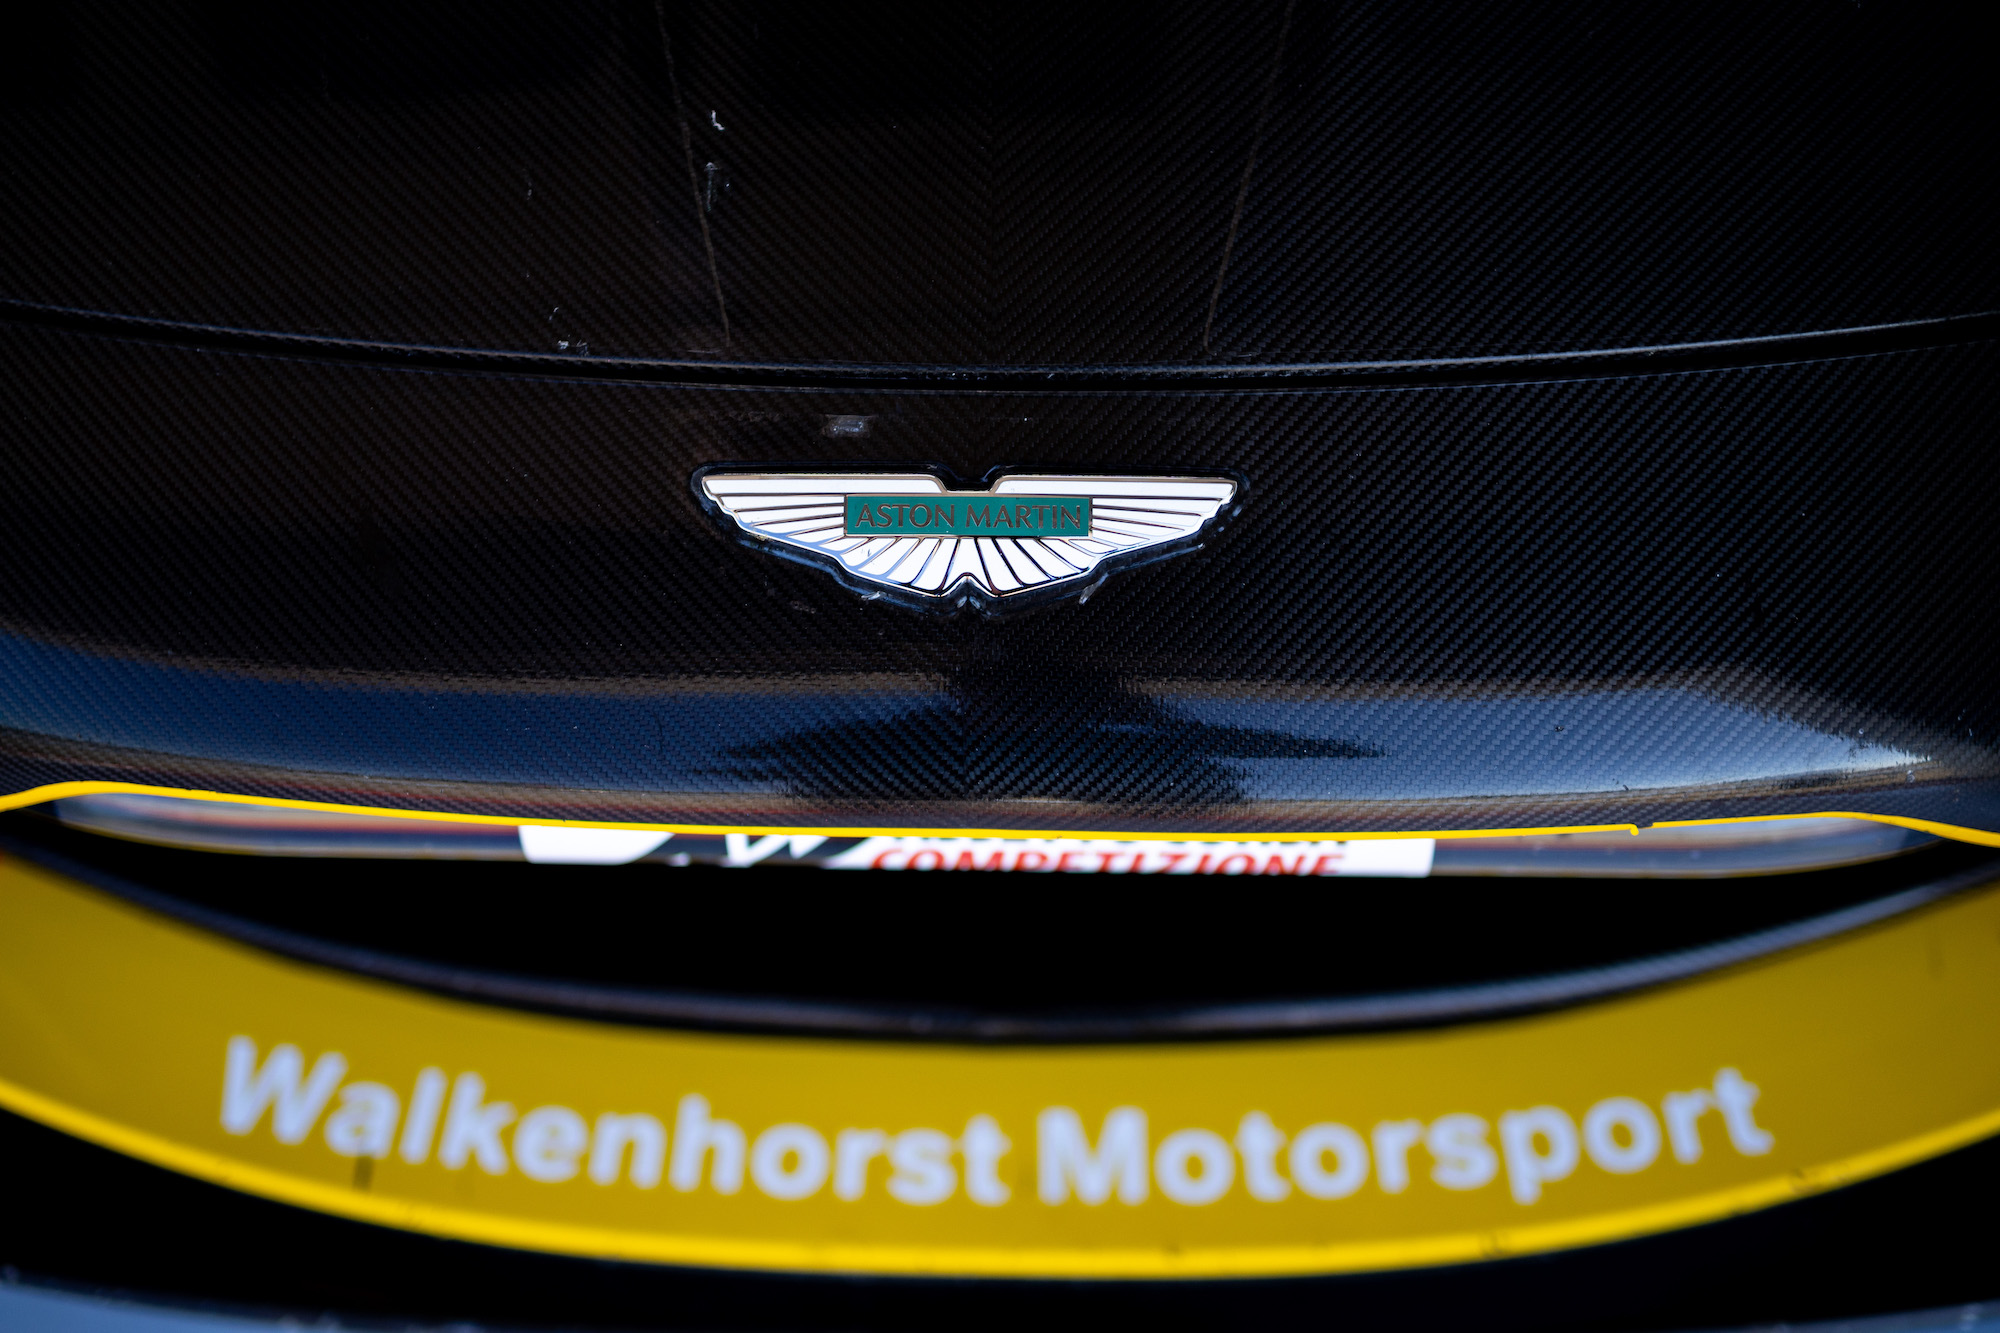 Walkenhorst Motorsport